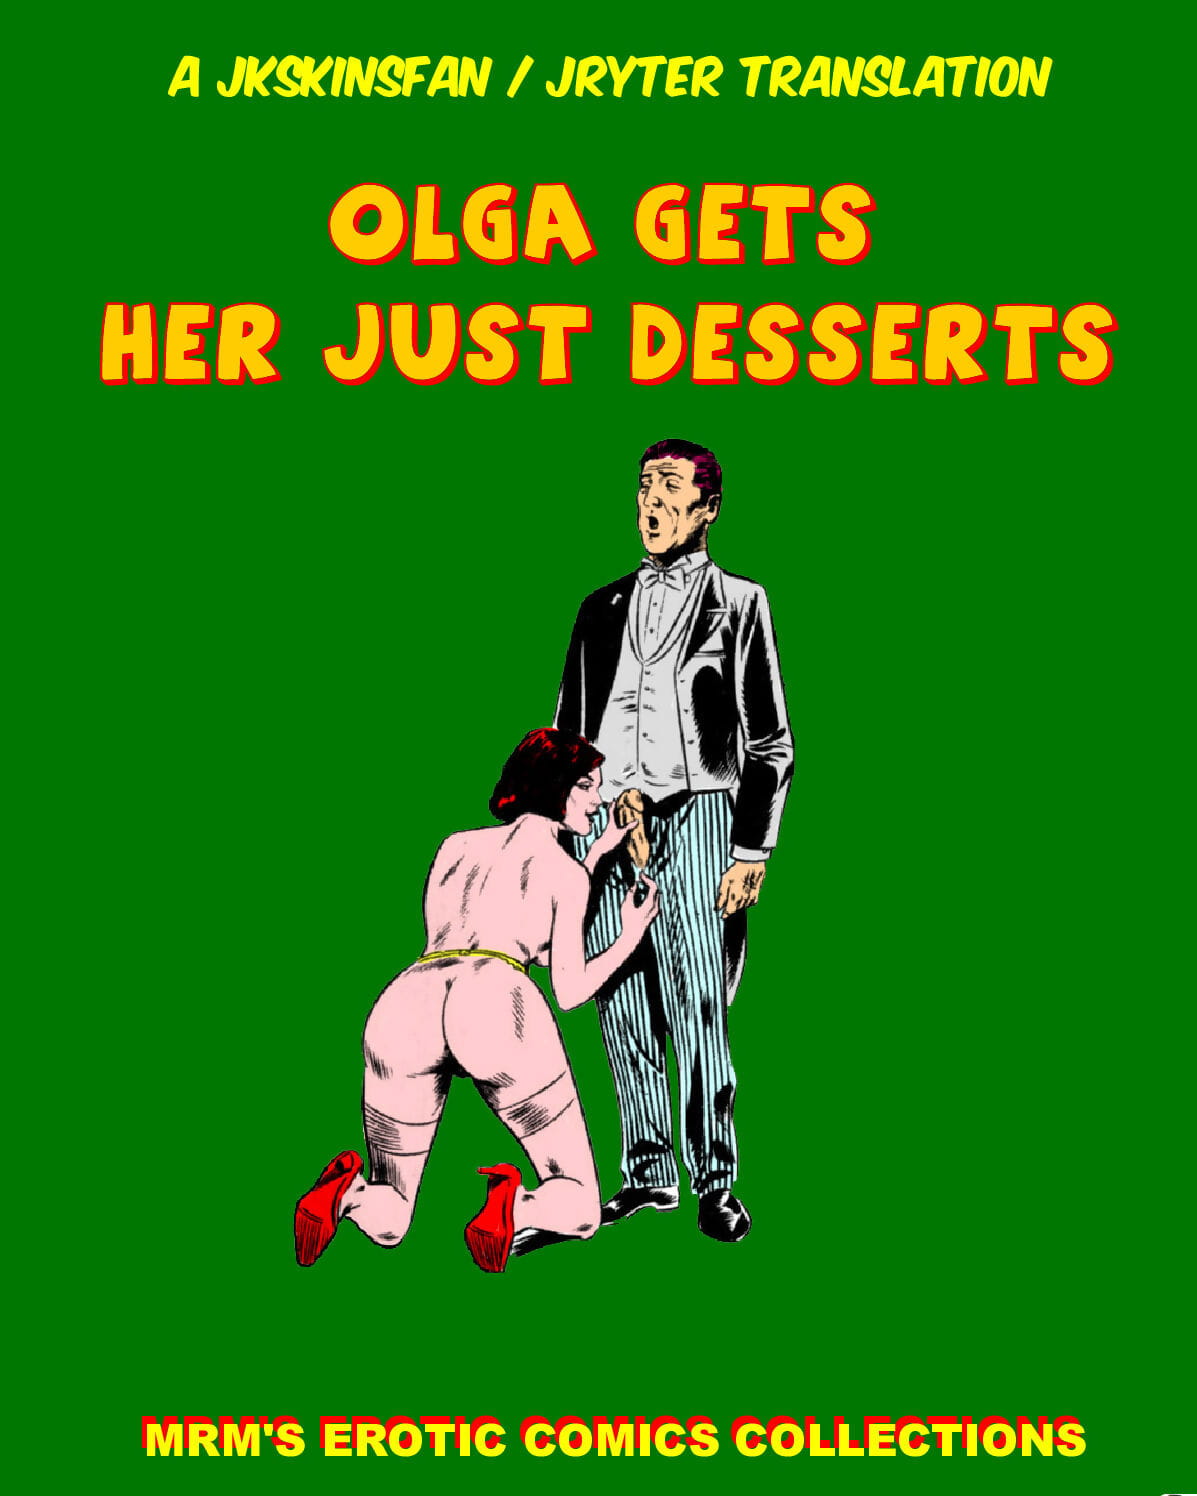 OLGA GETS HER JUST DESSERTS - A JKSKINSFAN / JRYTER TRANSLATION page 1